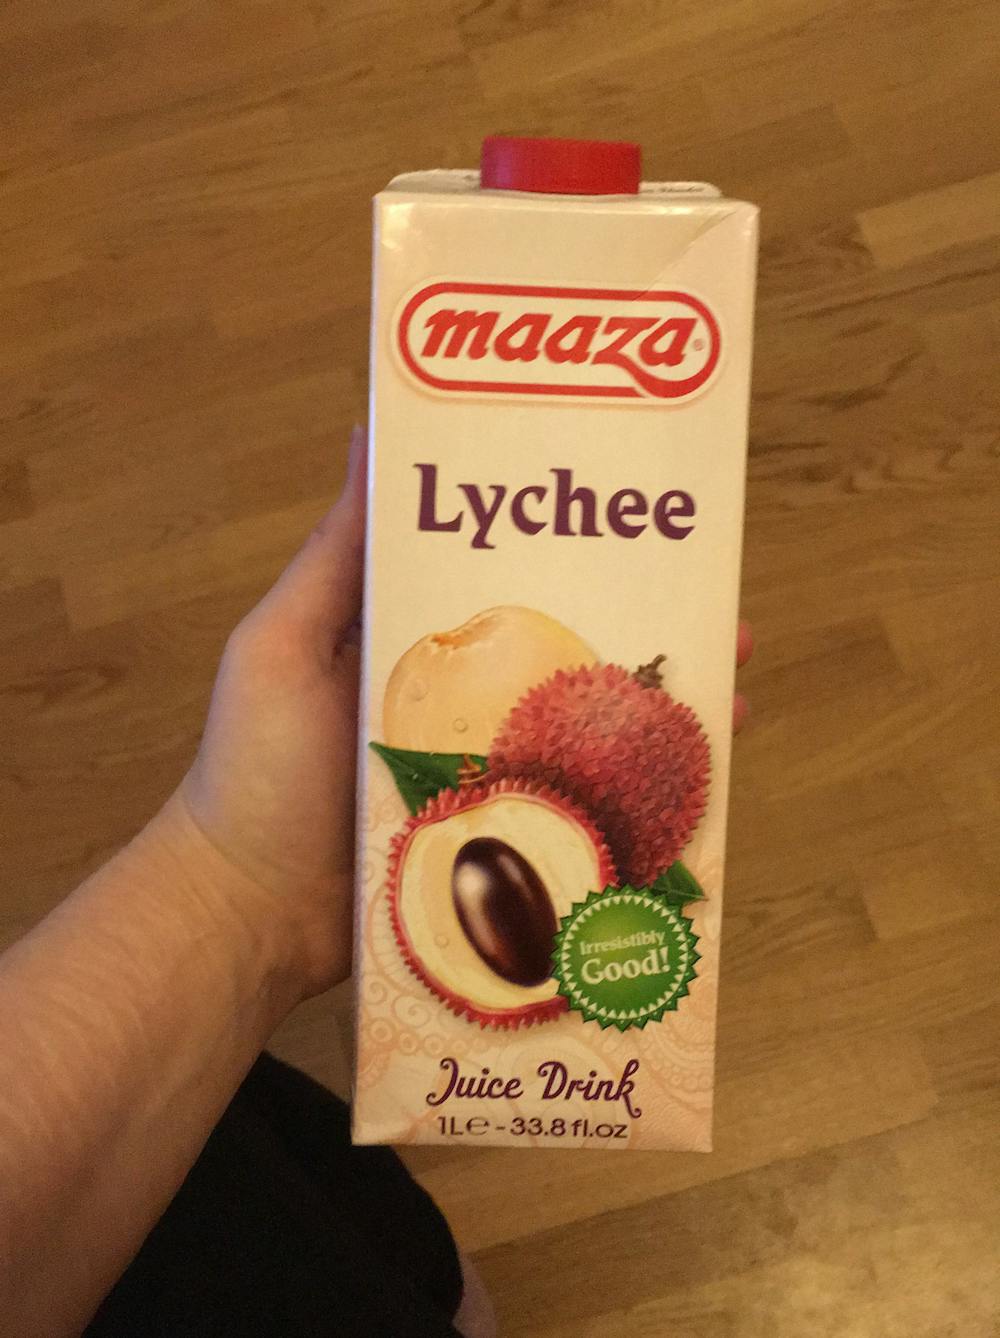 Lychee, Maaza